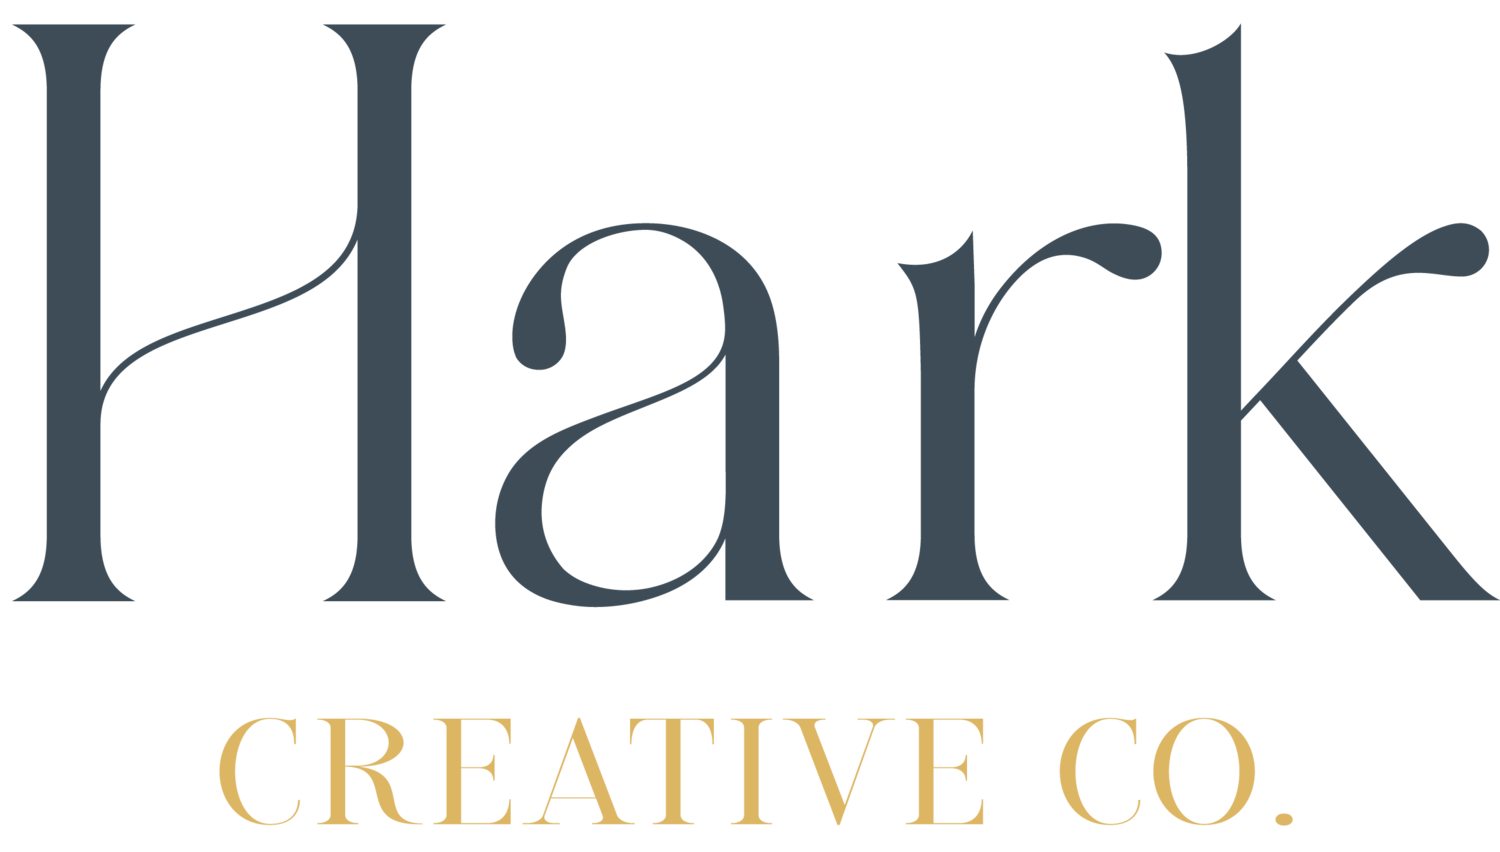 Hark Creative Co